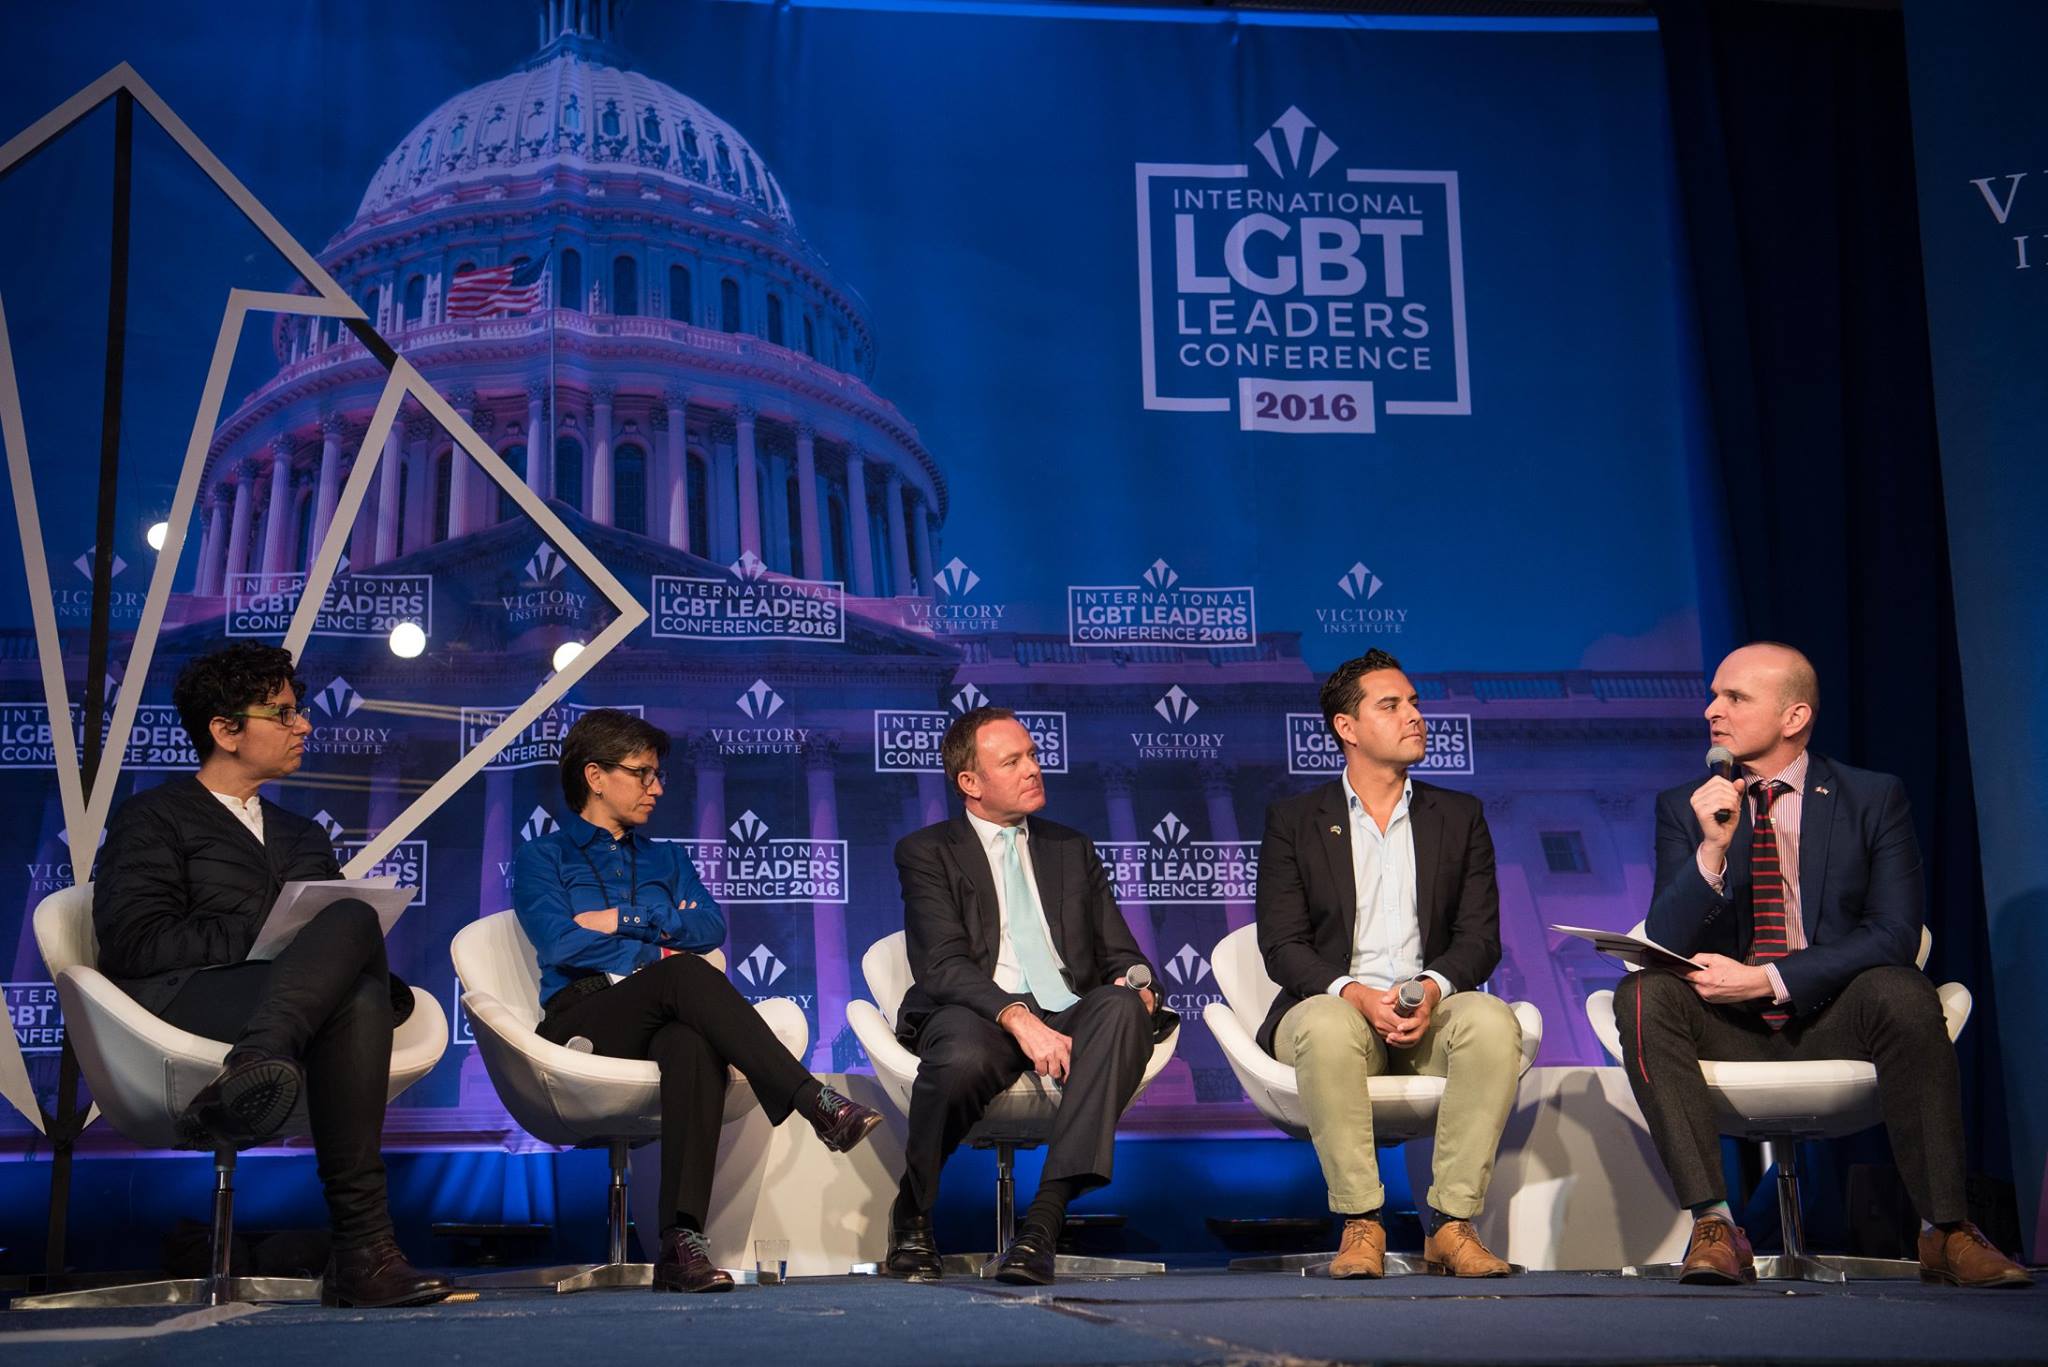 Global LGBTQ leaders attend International LGBTQ Leaders Conference